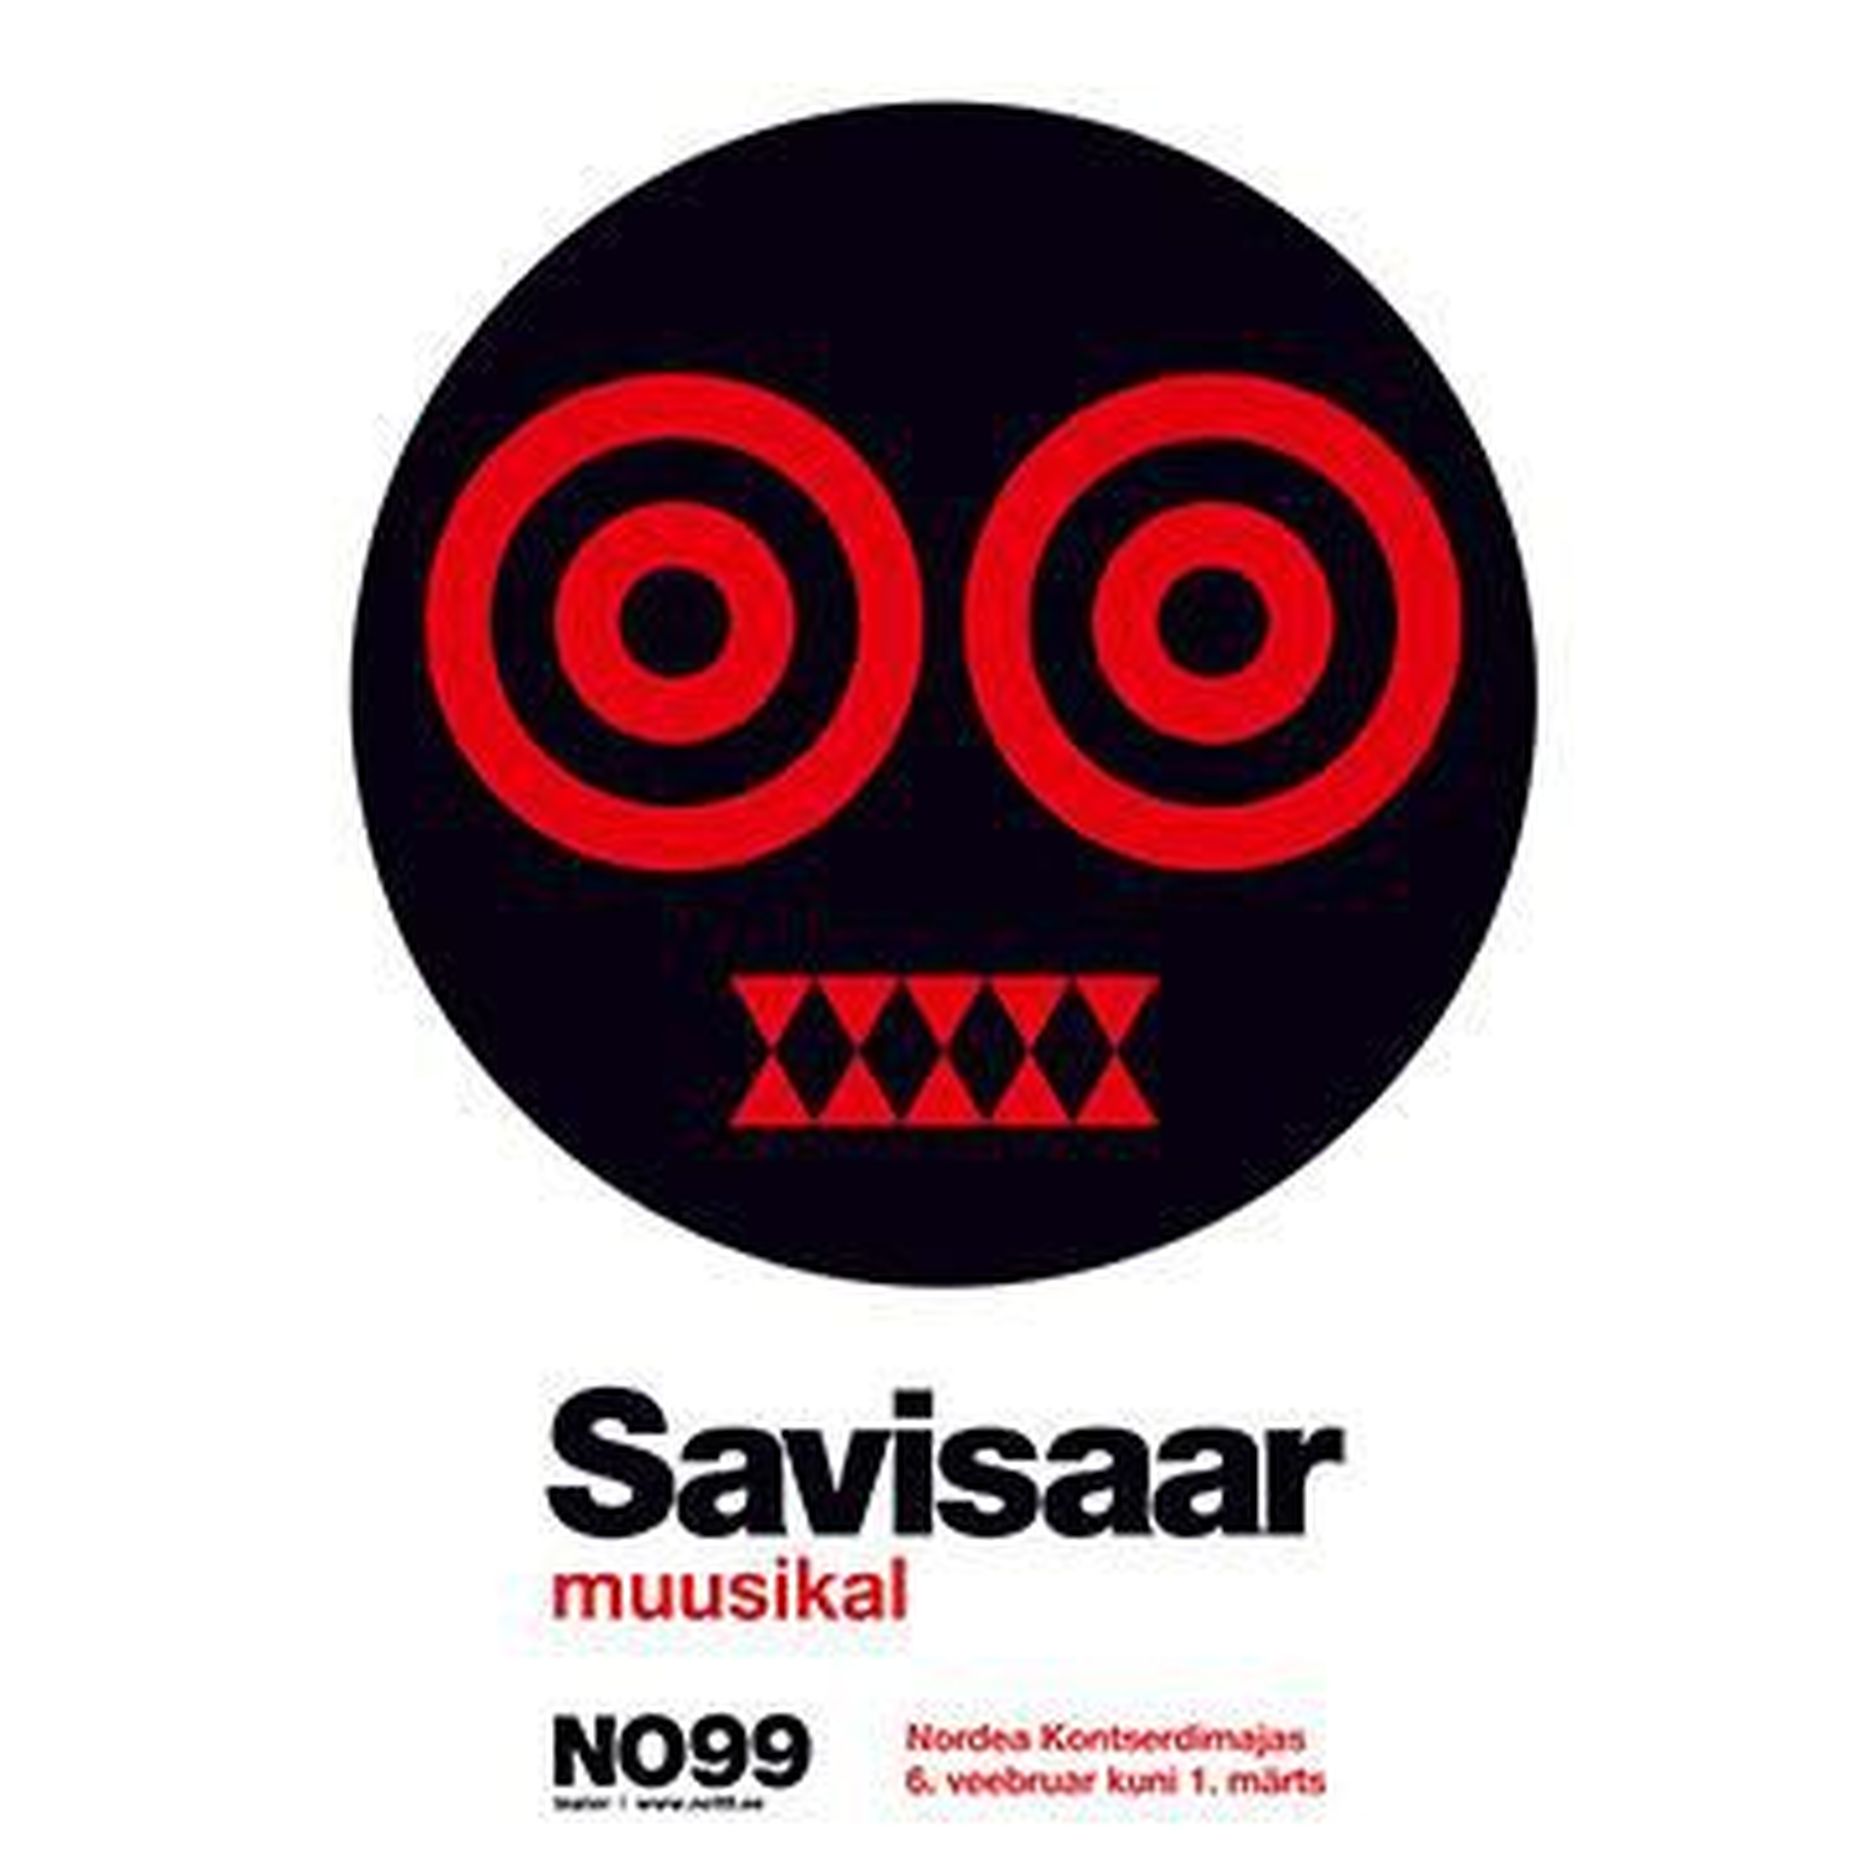 Teater No99 toob välja muusikali «Savisaar».